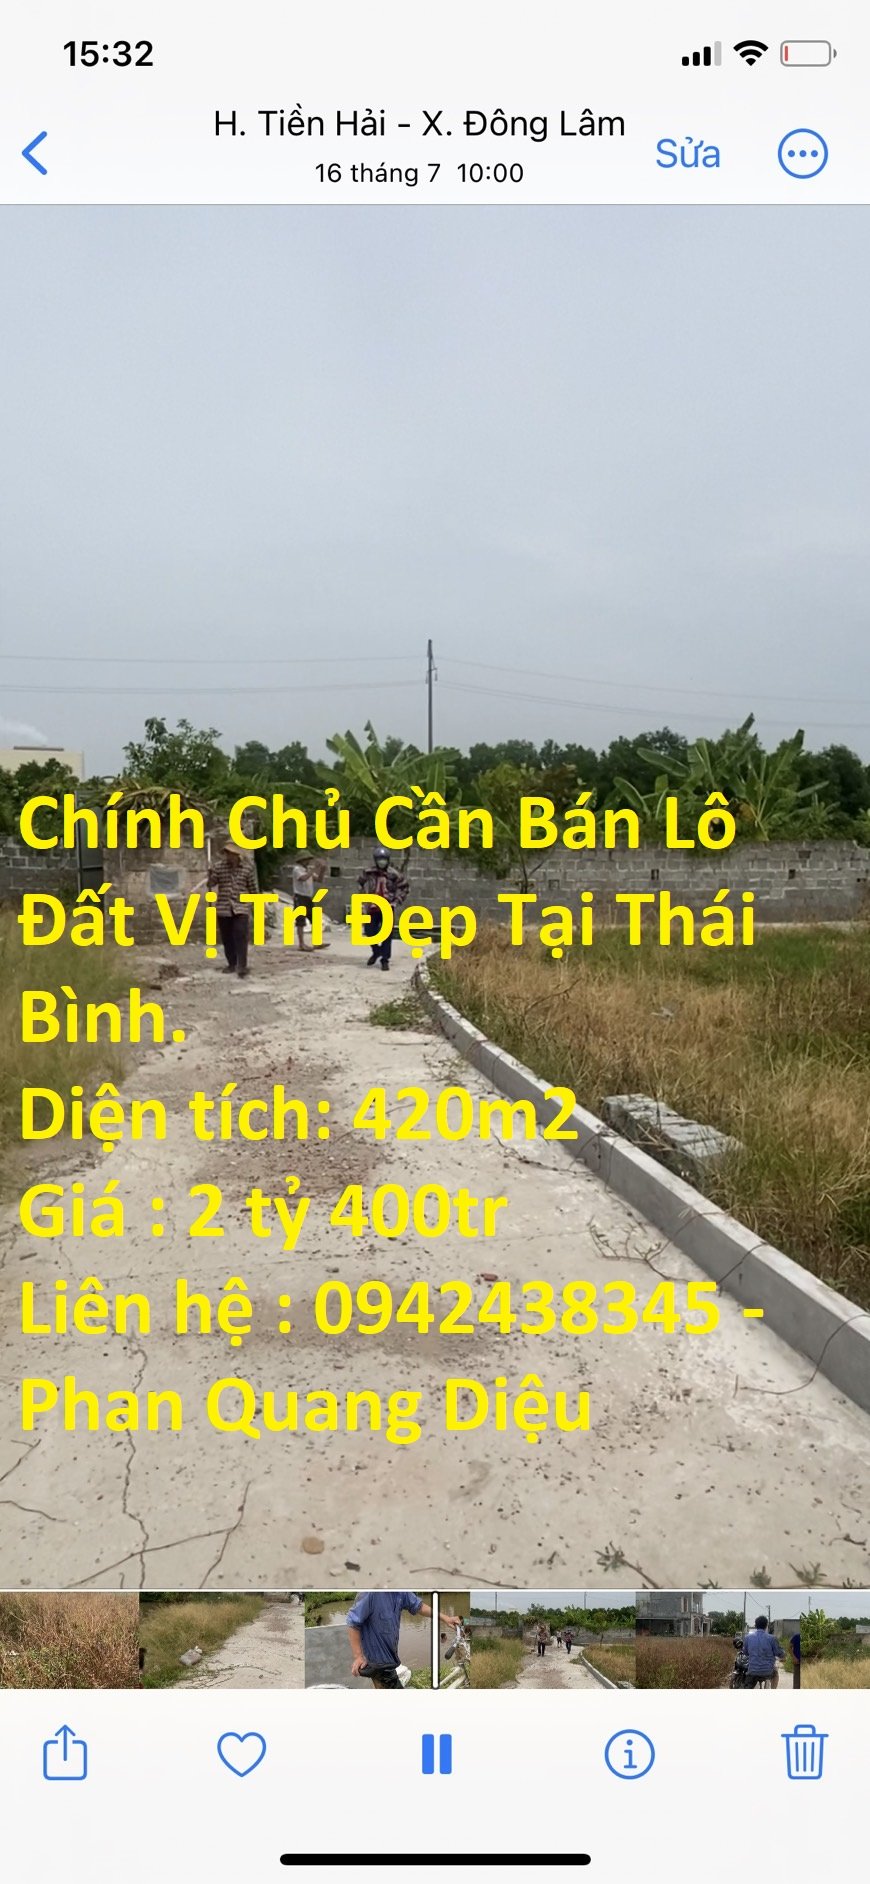 Chính Chủ Cần Bán Lô Đất  xã Đông Lâm, huyện Tiền Hải, tỉnh Thái Bình. 1